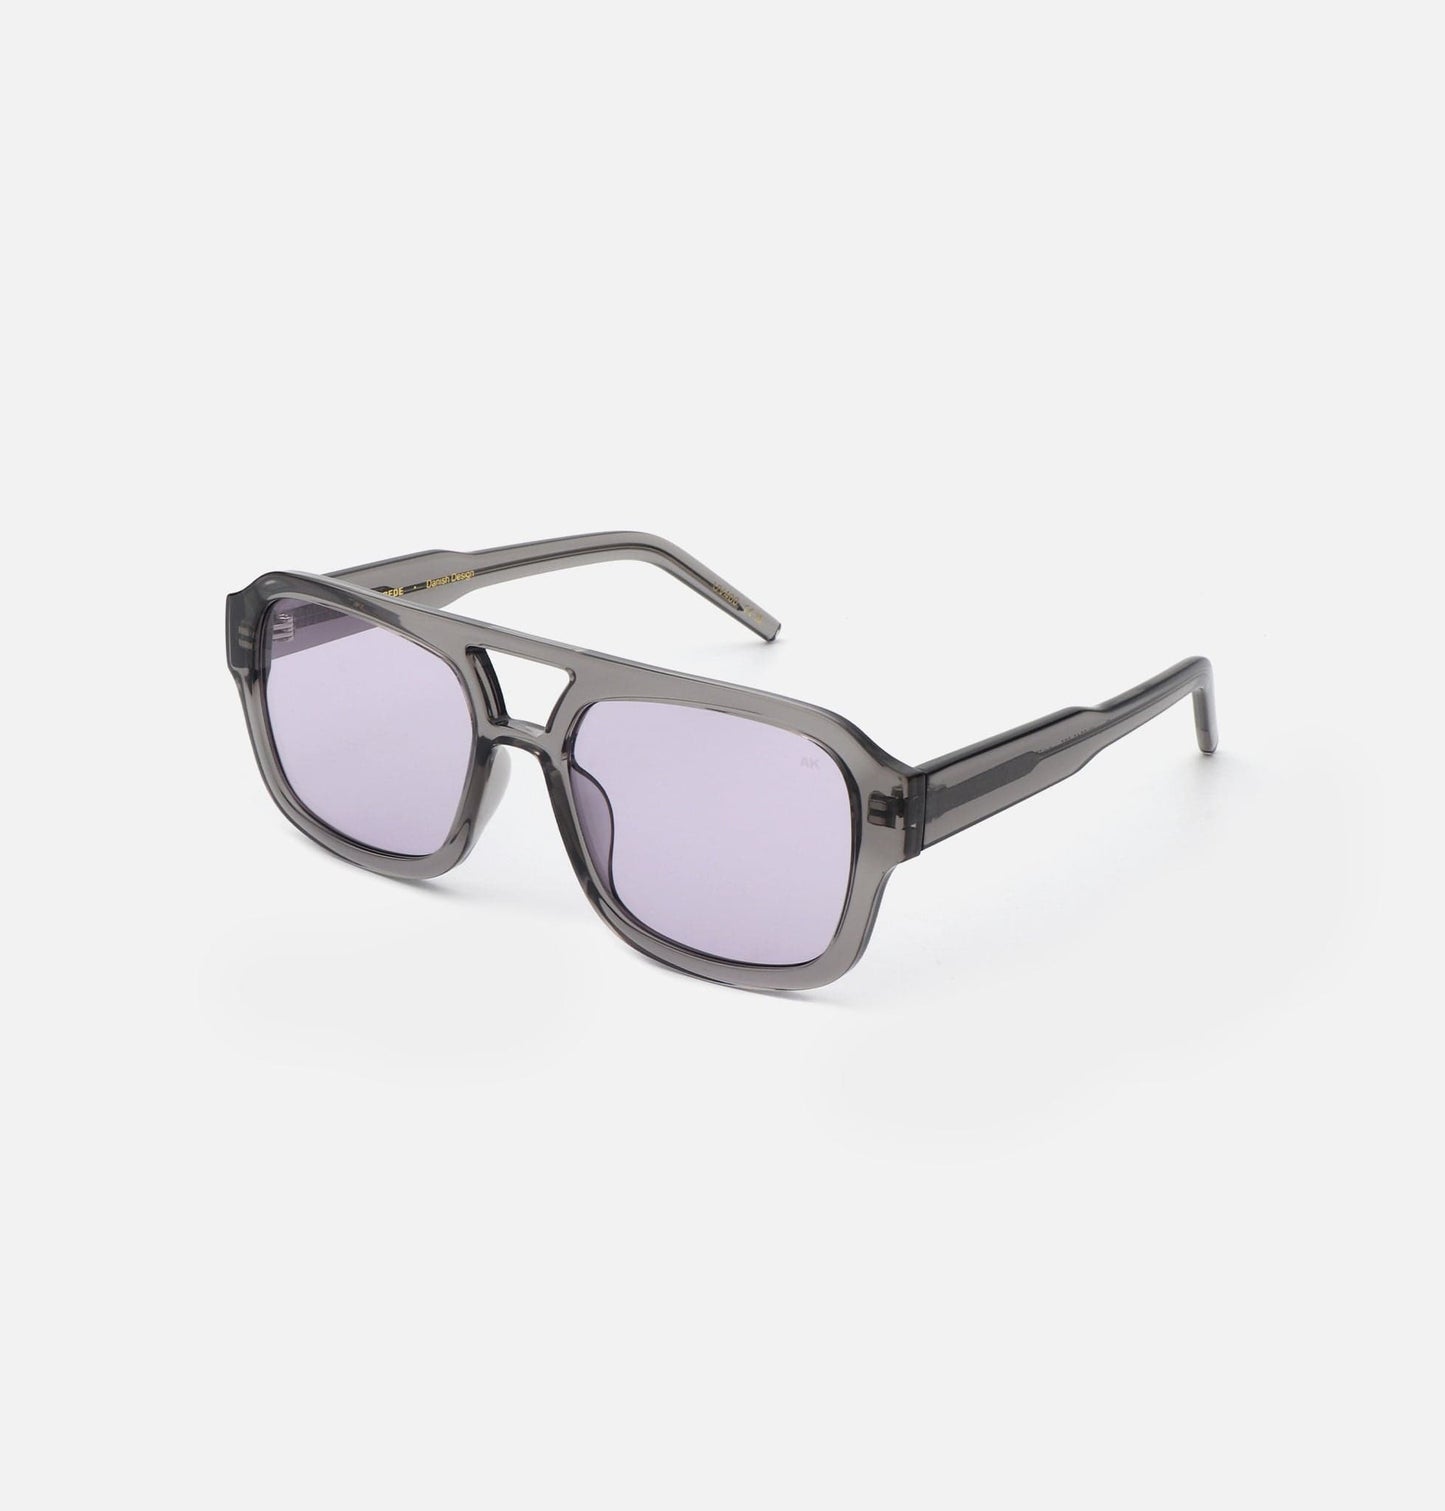 Kaya Sunglasses -grey transparent